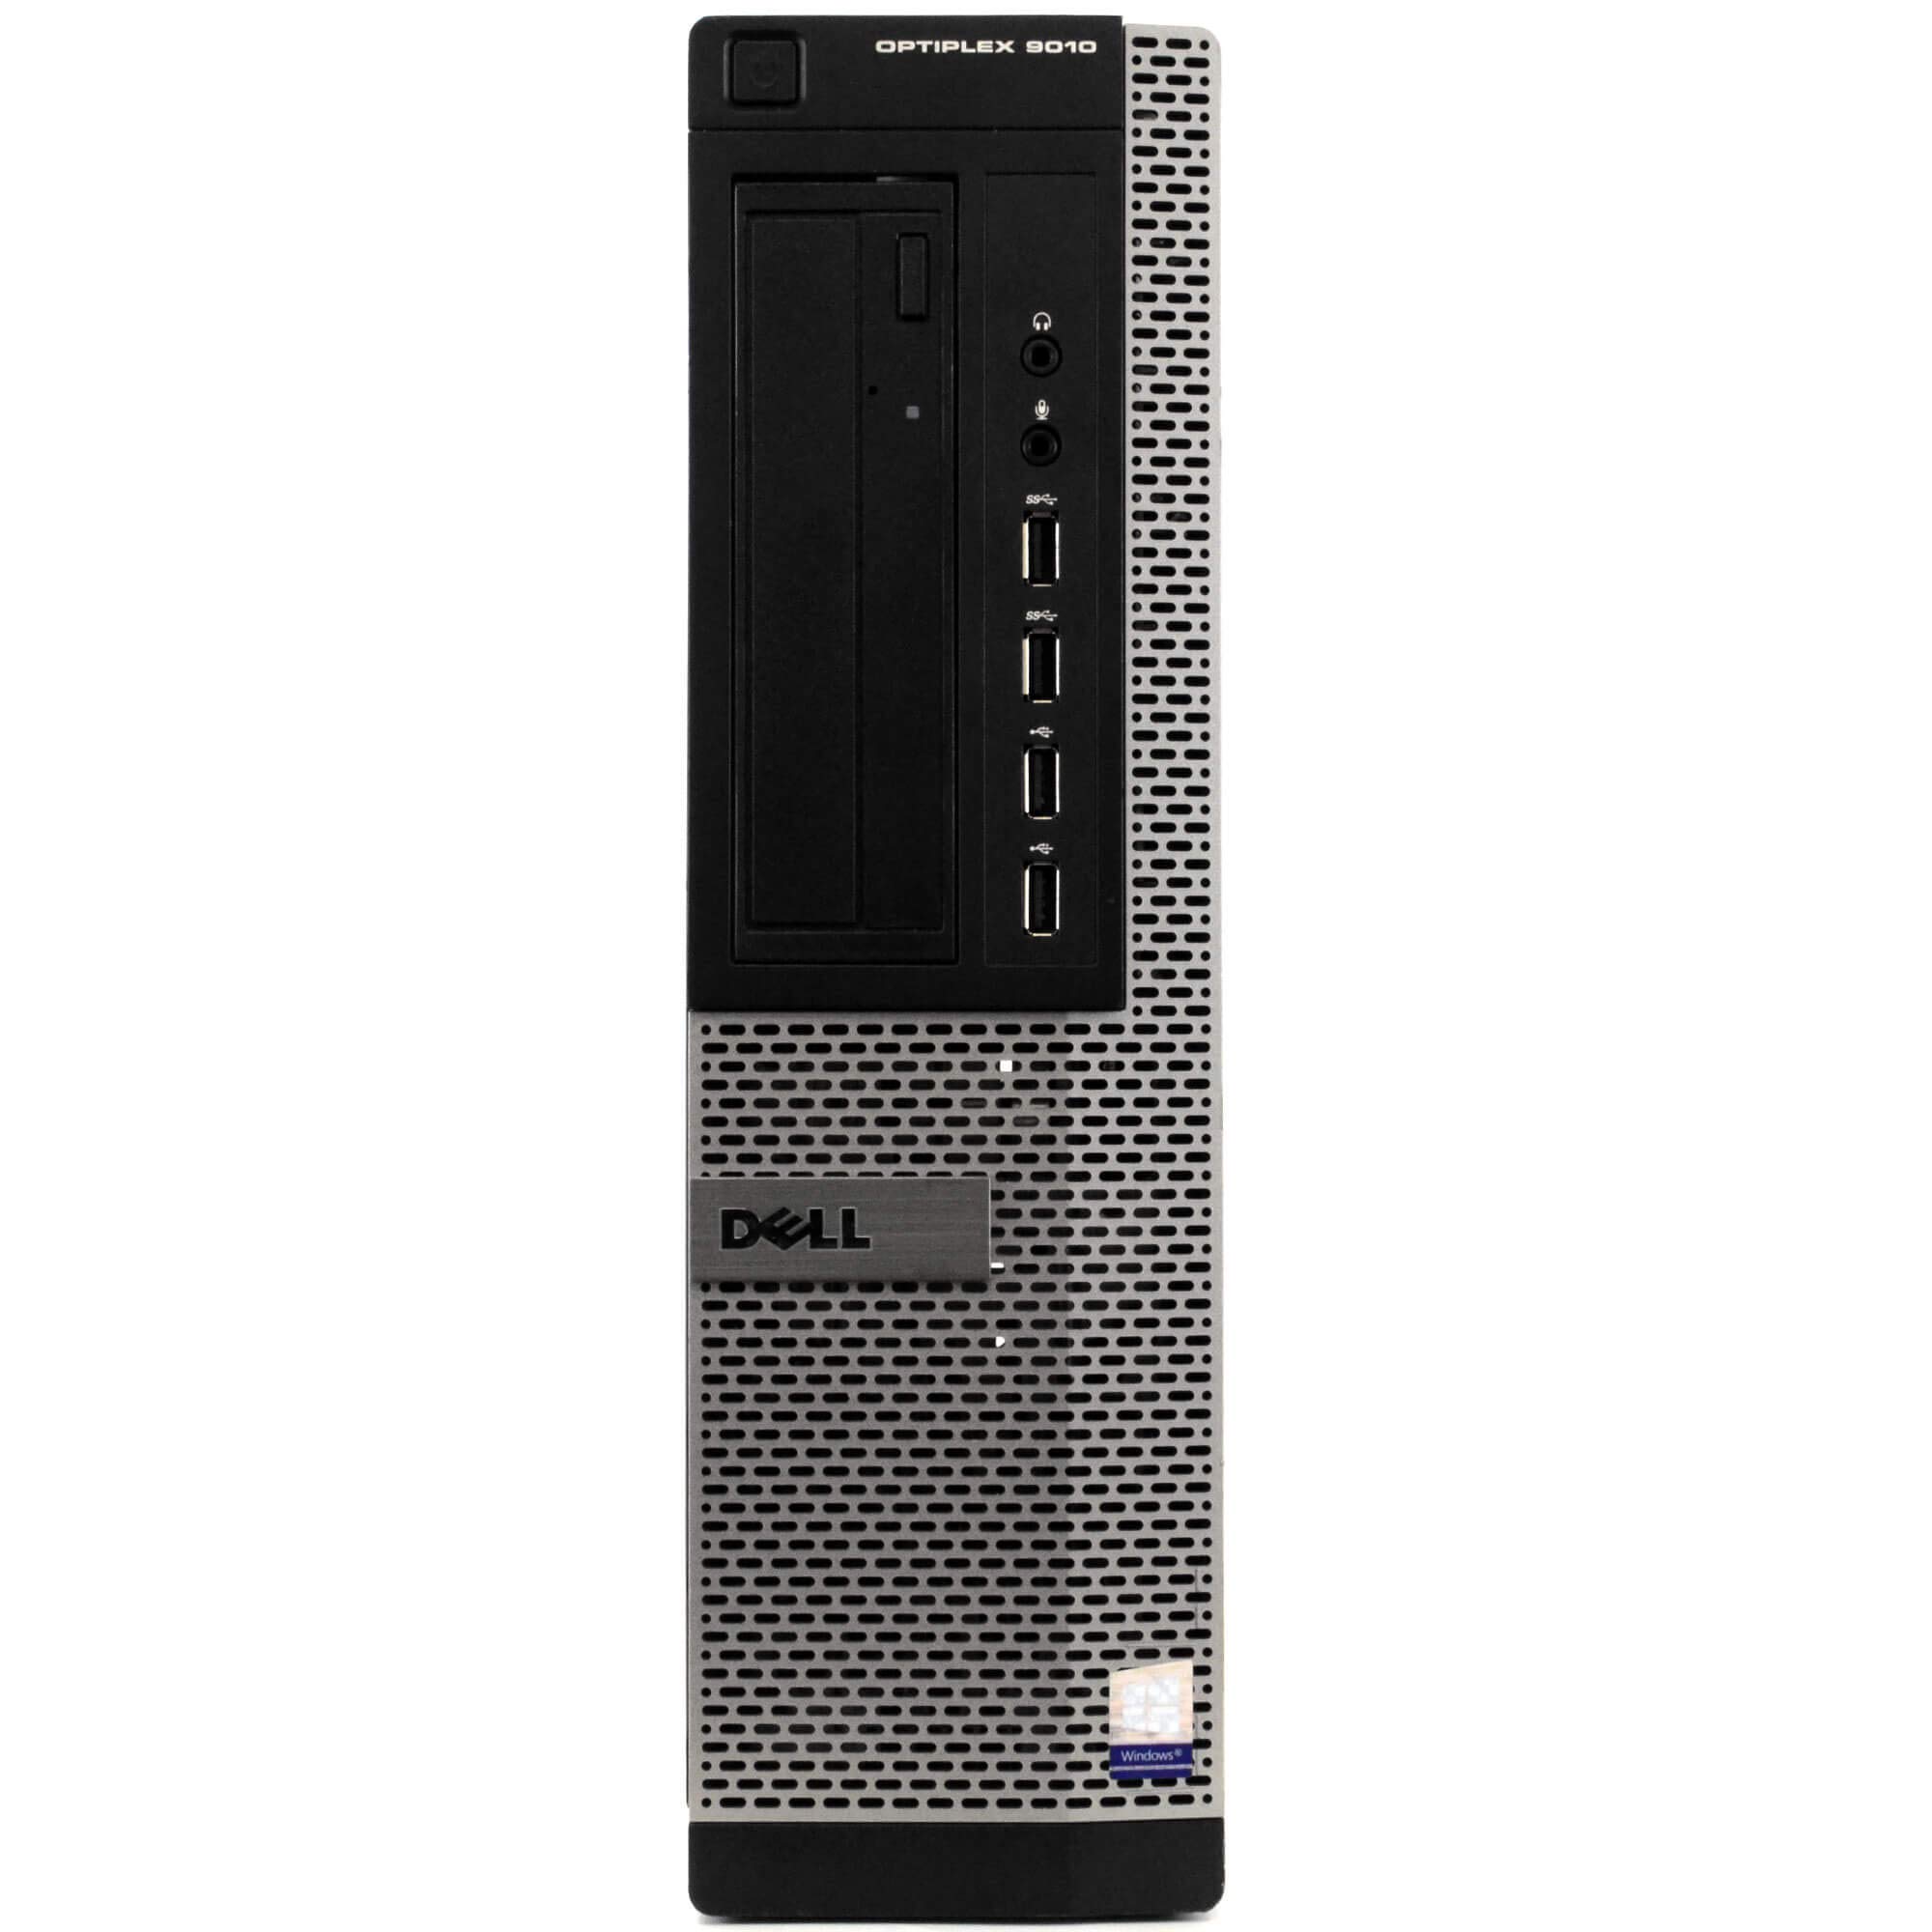 Dell Optiplex 9010 Desktop Computer PC, 8GB RAM, 500GB HDD Hard Drive, Windows 10 Professional 64 Bit (Renewed)